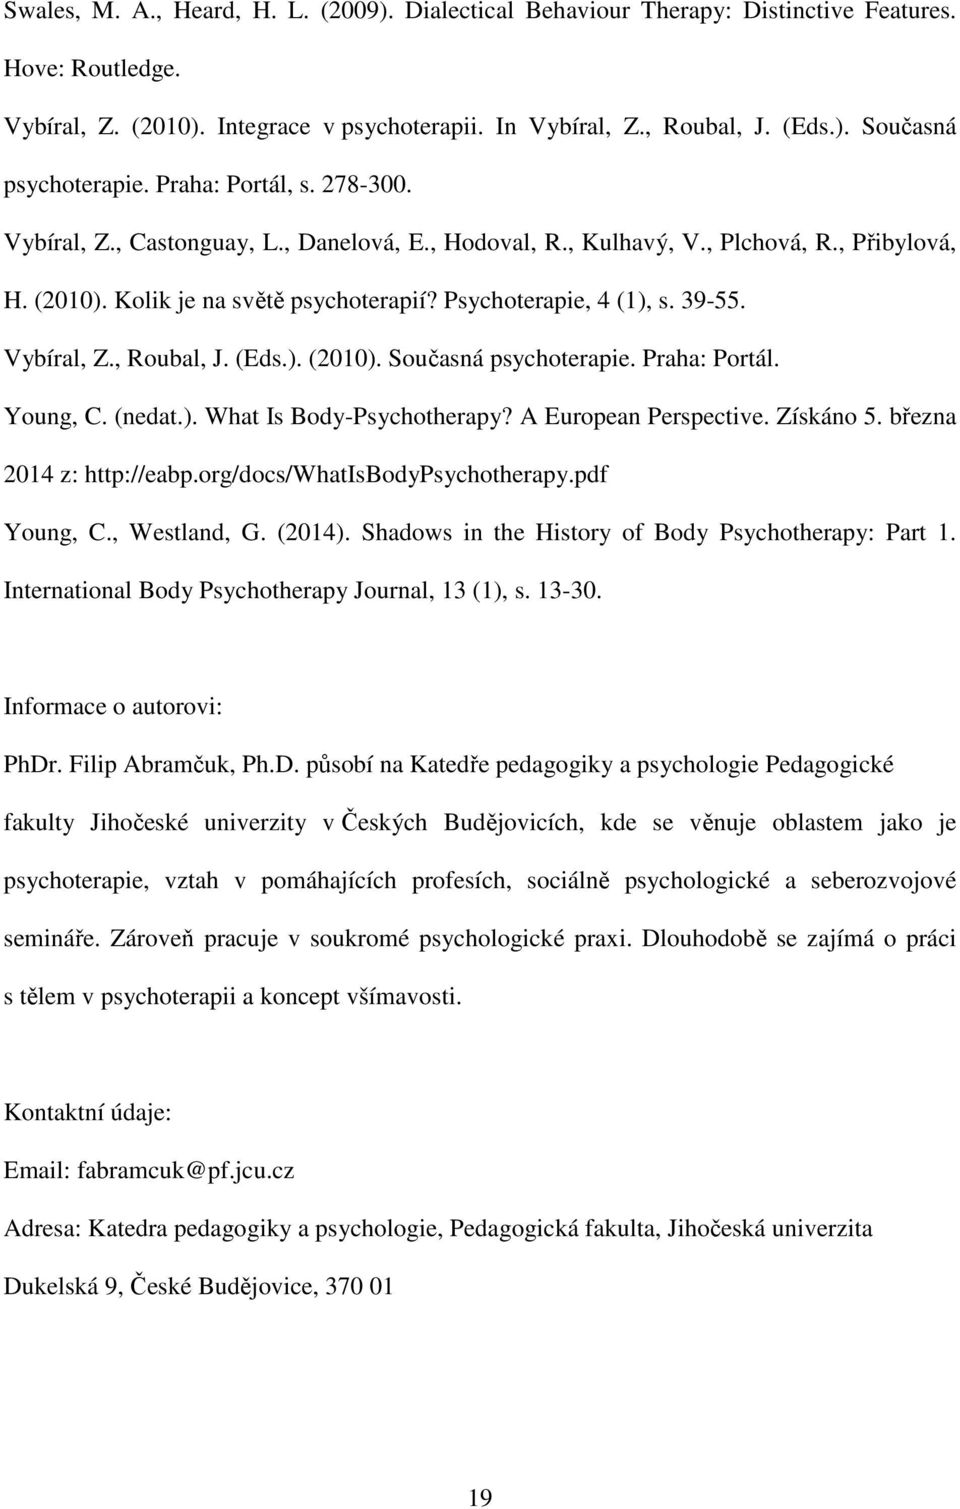 Vybíral, Z., Roubal, J. (Eds.). (2010). Současná psychoterapie. Praha: Portál. Young, C. (nedat.). What Is Body-Psychotherapy? A European Perspective. Získáno 5. března 2014 z: http://eabp.